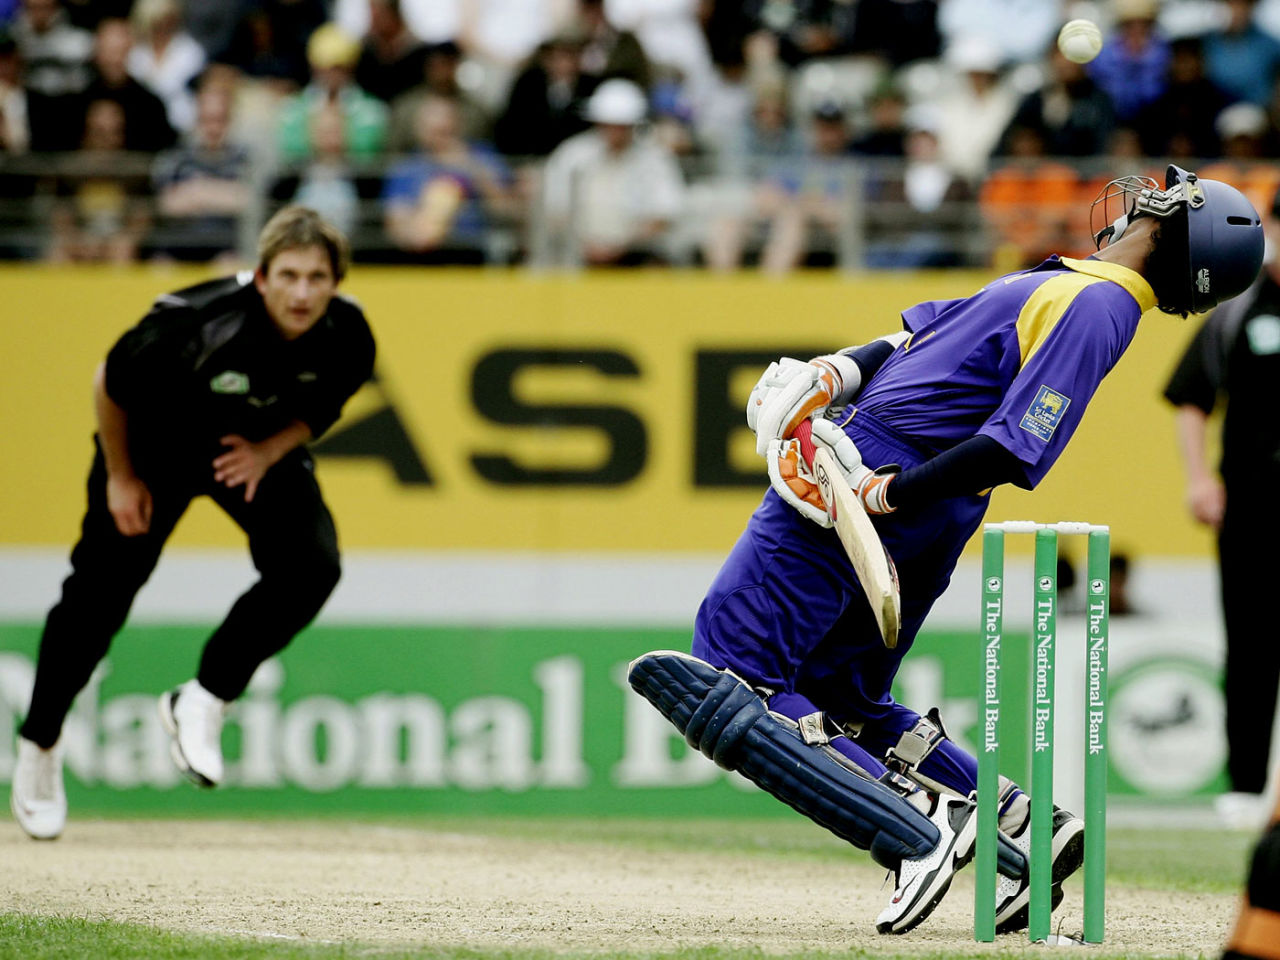 Kumar Sangakkara sways to avoid a bouncer from Shane Bond, New Zealand v Sri Lanka, 4th ODI, Eden Park, January 6, 2007